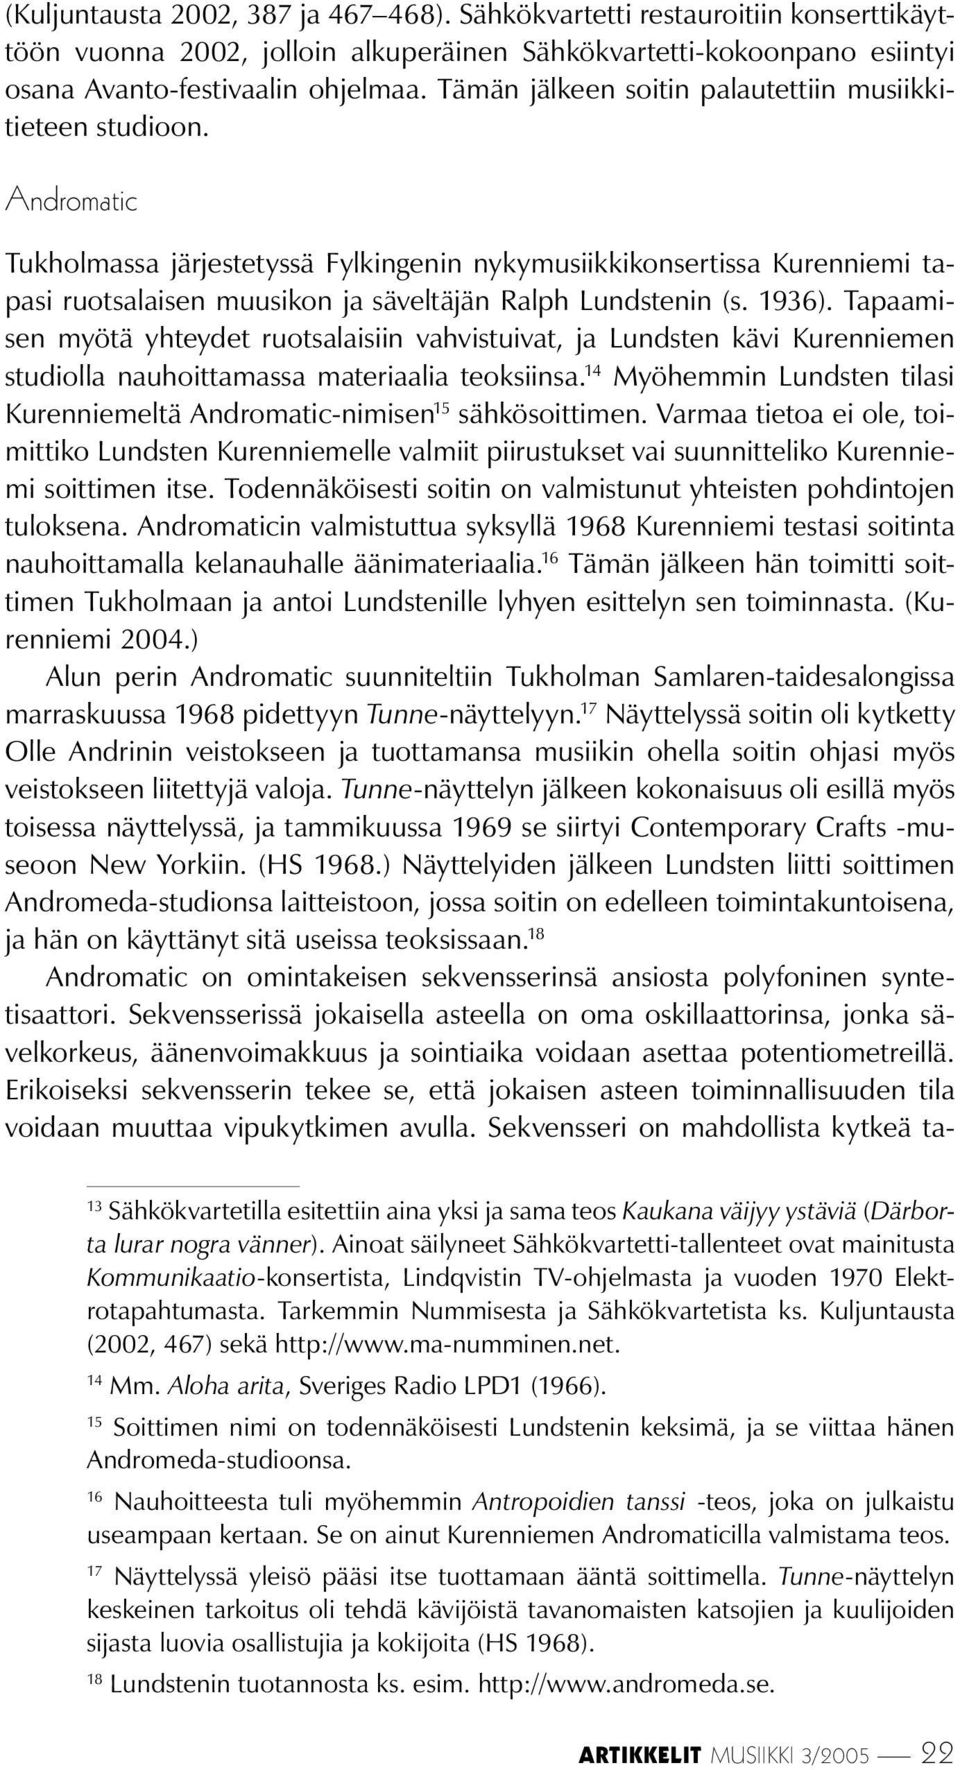 Andromatic Tukholmassa järjestetyssä Fylkingenin nykymusiikkikonsertissa Kurenniemi tapasi ruotsalaisen muusikon ja säveltäjän Ralph Lundstenin (s. 1936).